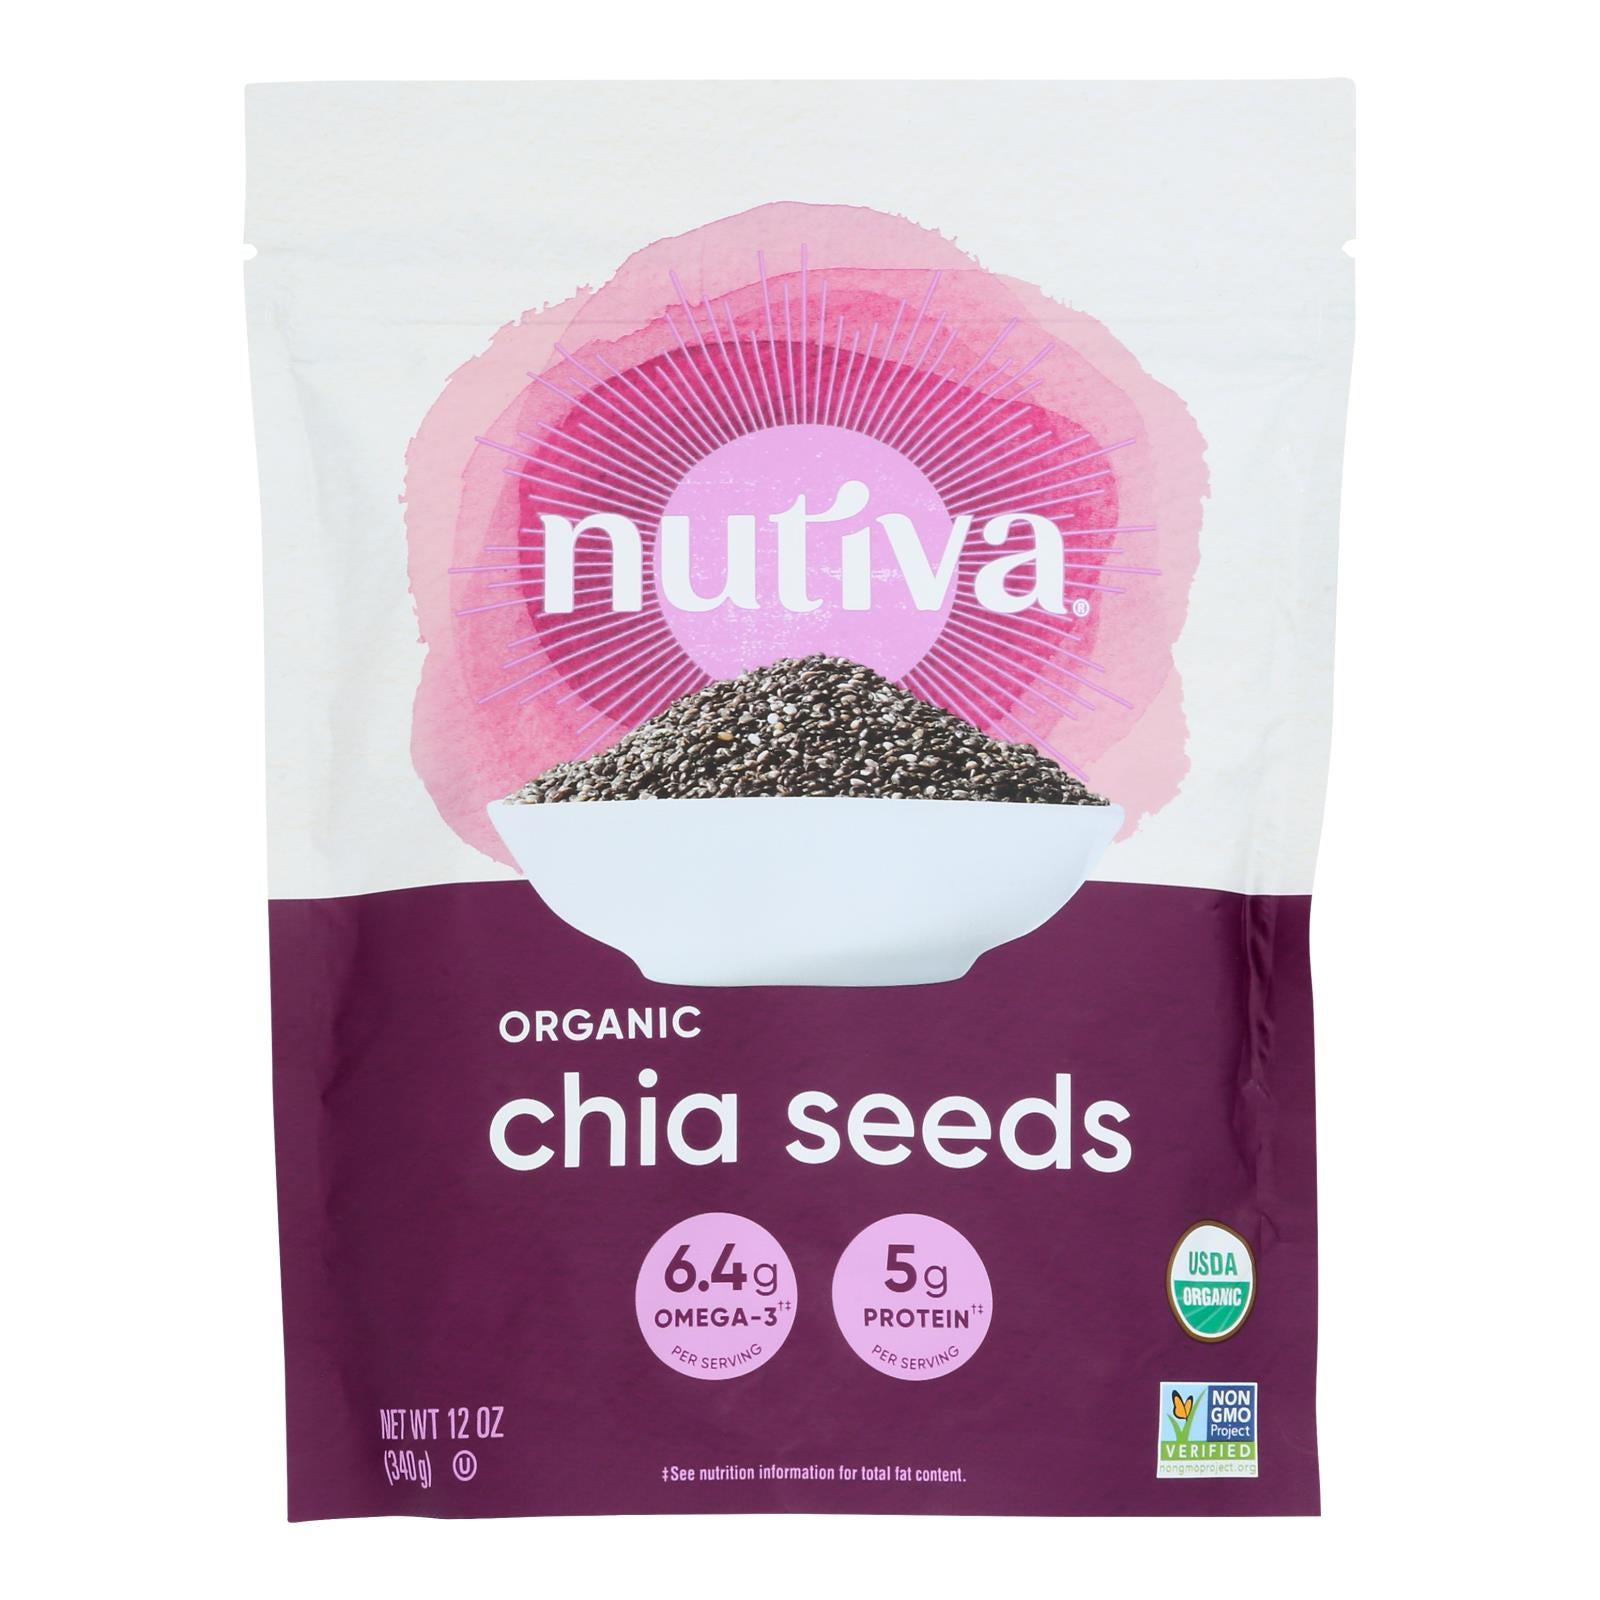 Nutiva Organic Chia Seed - 12 Oz